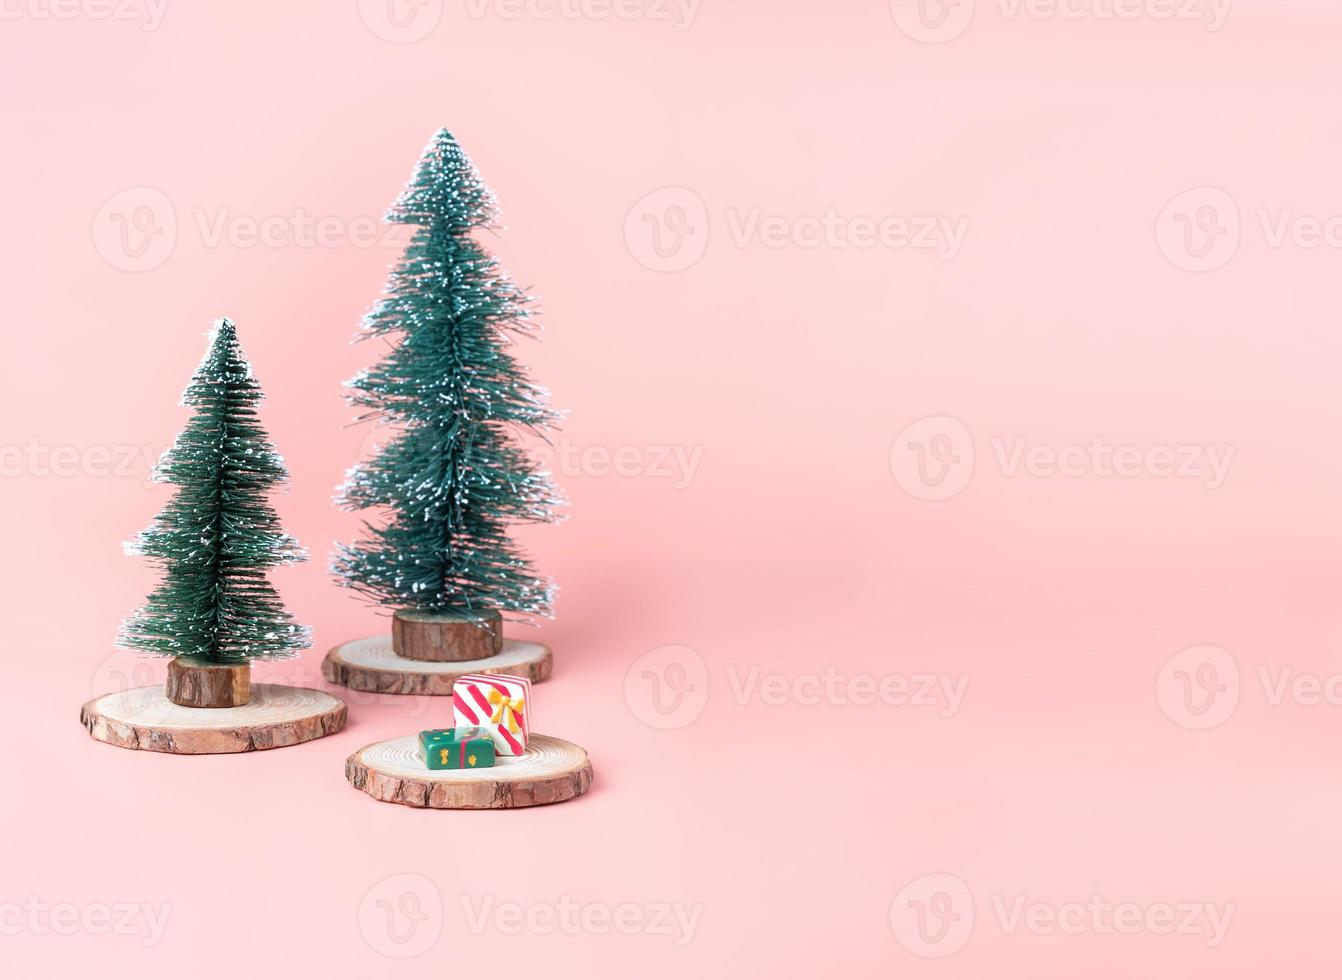 arbre sapin de noël sur tranche de bûche de bois avec boîte présente sur rose pastel photo